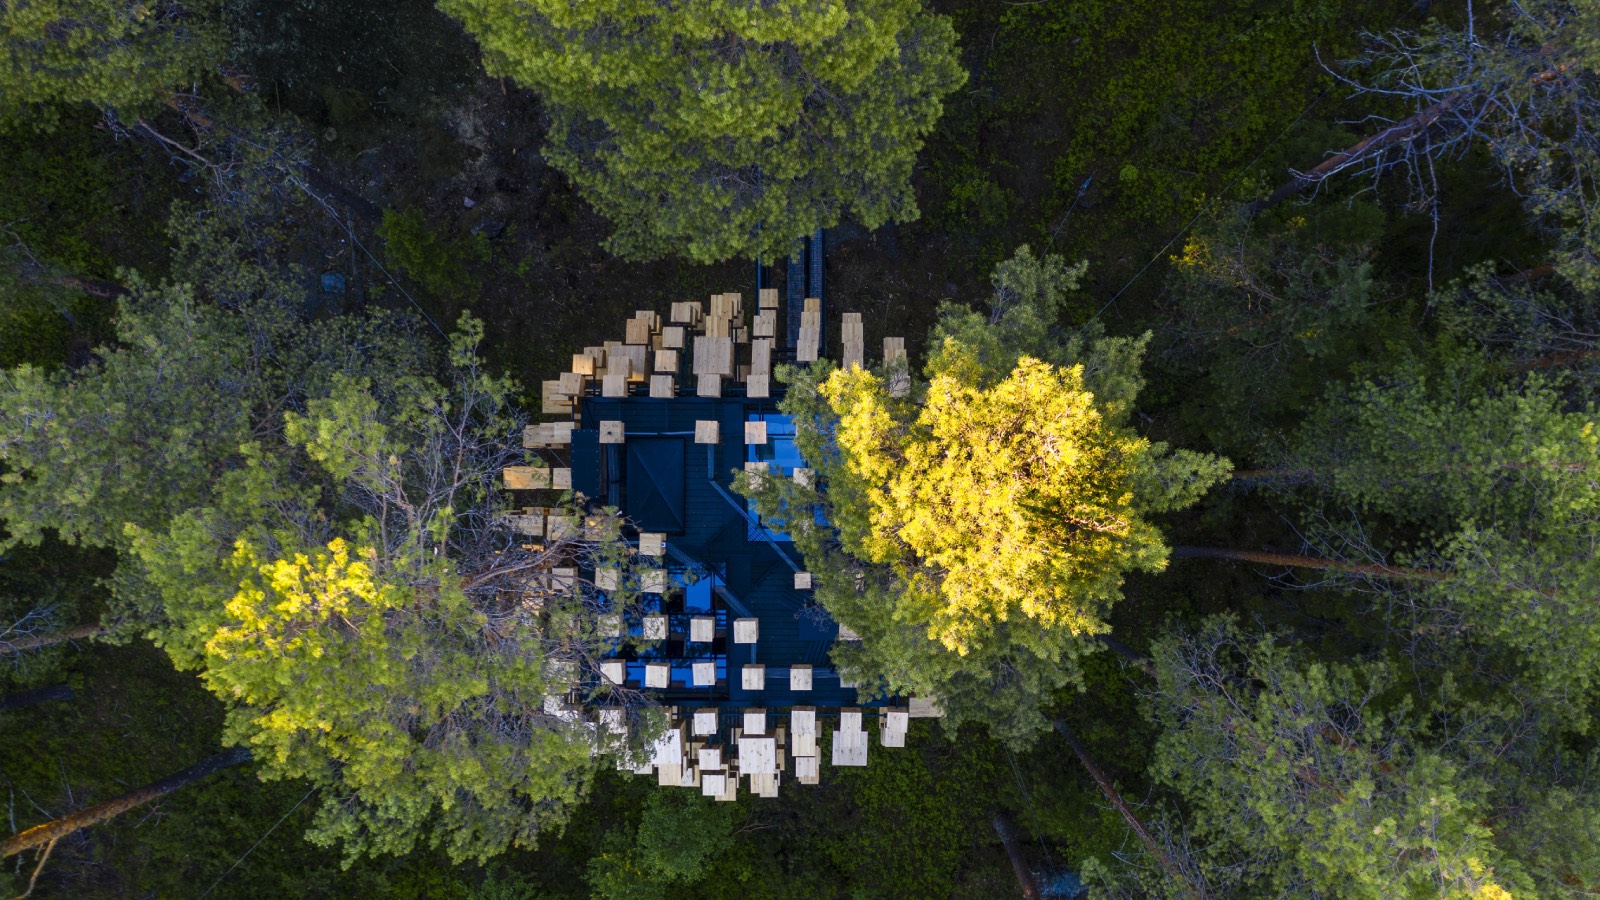 Los visitantes tienen acceso a una terraza en la azotea, cerca de las copas de los árboles, que ofrece unas vistas de 360 grados del bosque. - imagen 1